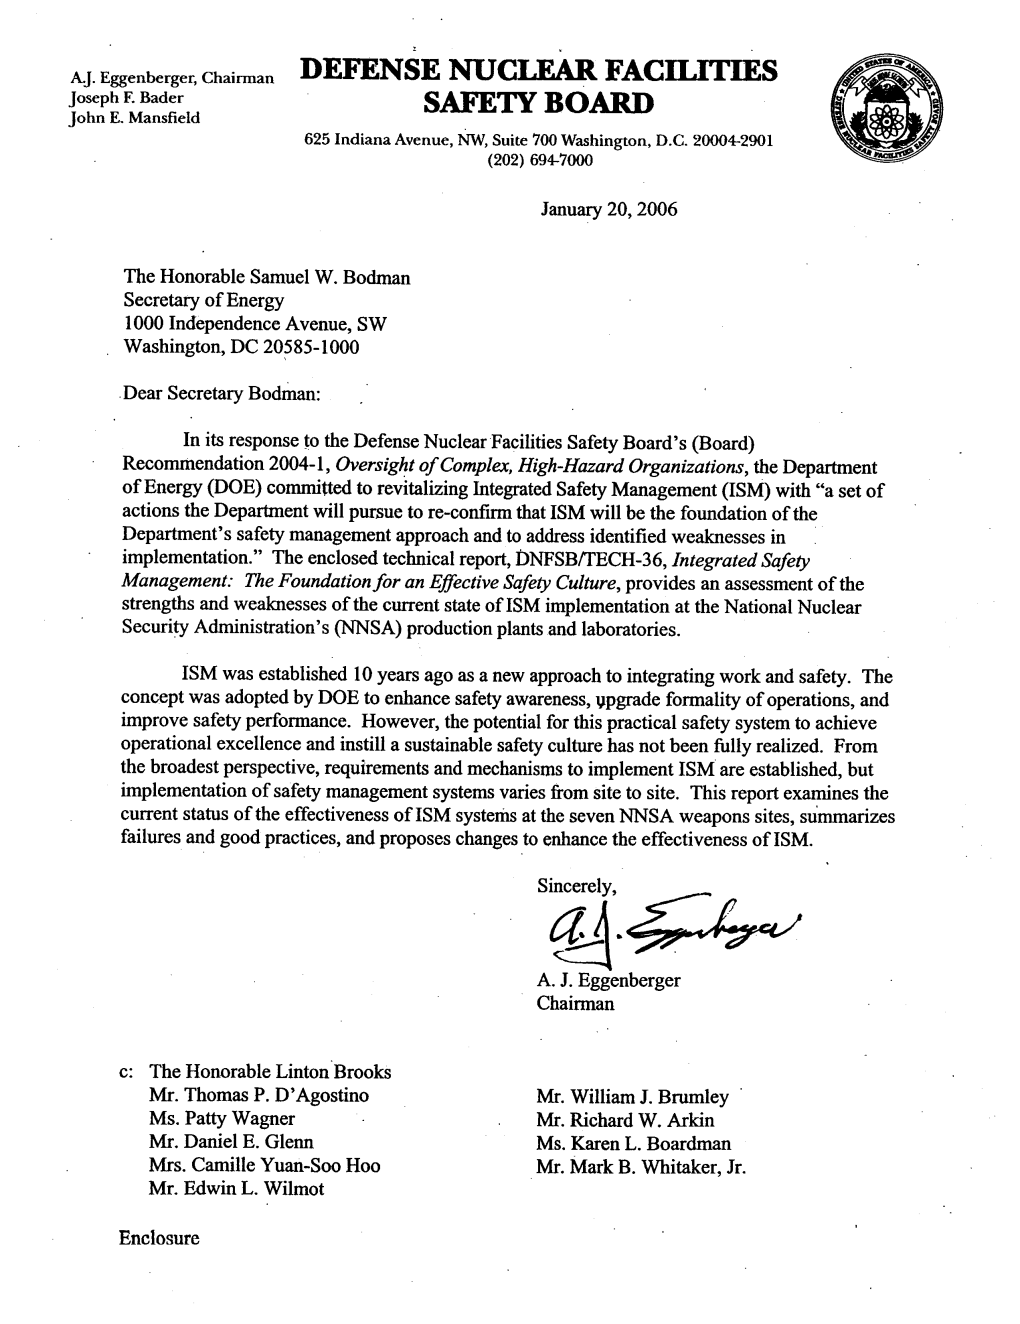 January 20, 2006, Board Letter Forwarding